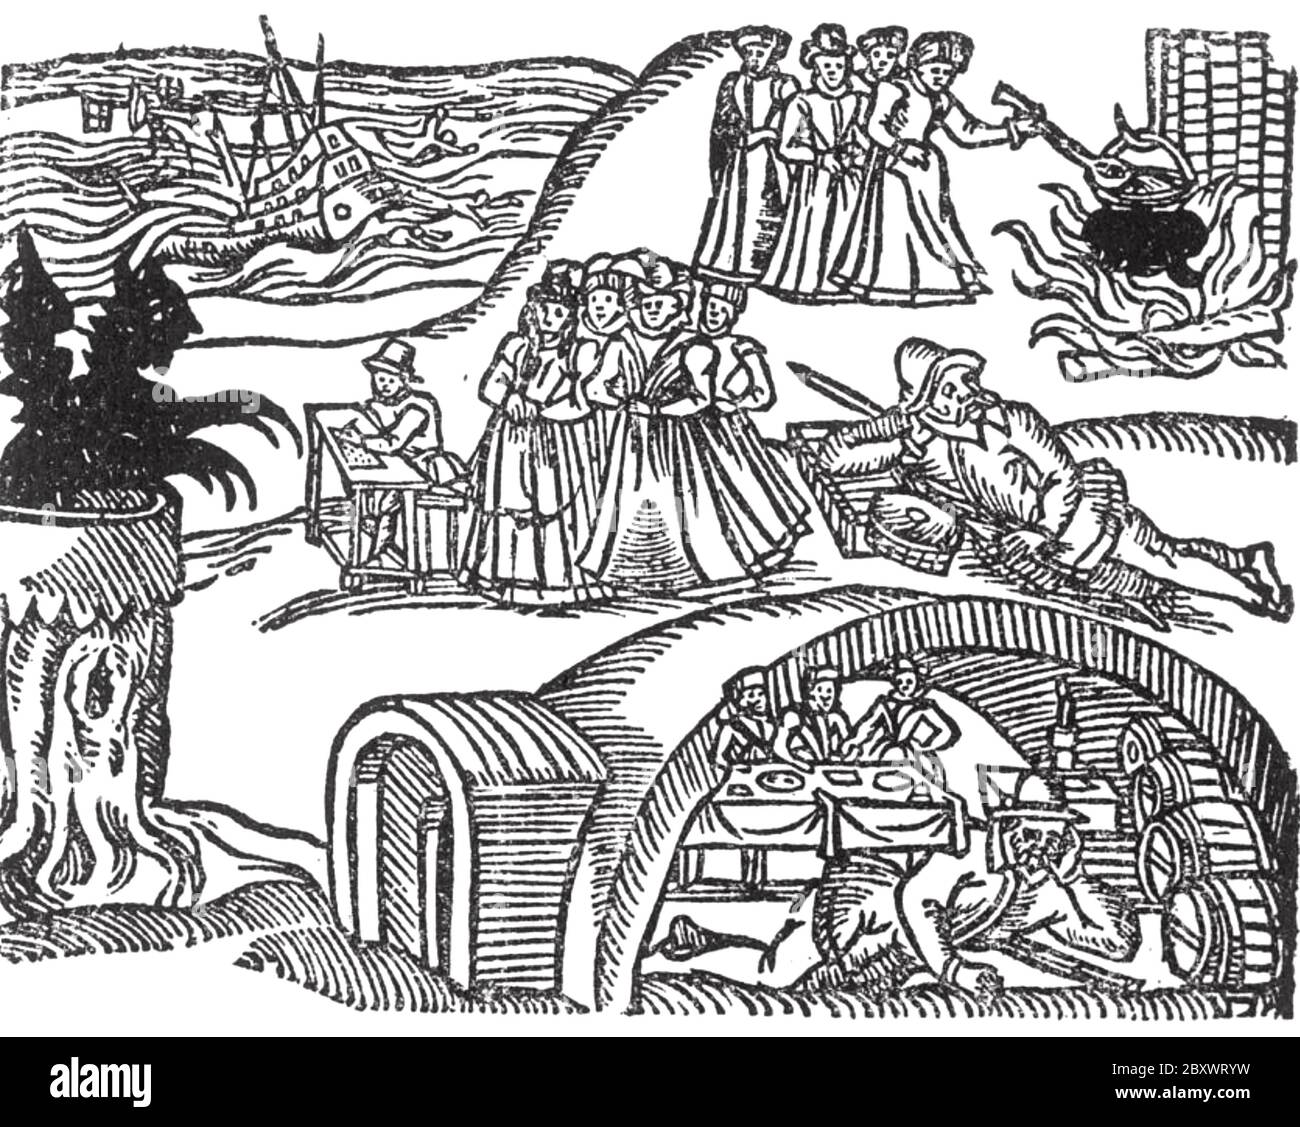 ESSAIS DE SORCIÈRES DE BERWICK NORD 1590. Les sorcières rencontrent le diable dans une coupe de bois de la brochure de 1591 'Newes from Scotland'. L'une des accusations a soulevé une tempête lors du voyage du roi James VI et de la princesse Anne de retour de Norvège. Le navire est affiché en arrière-plan. Banque D'Images